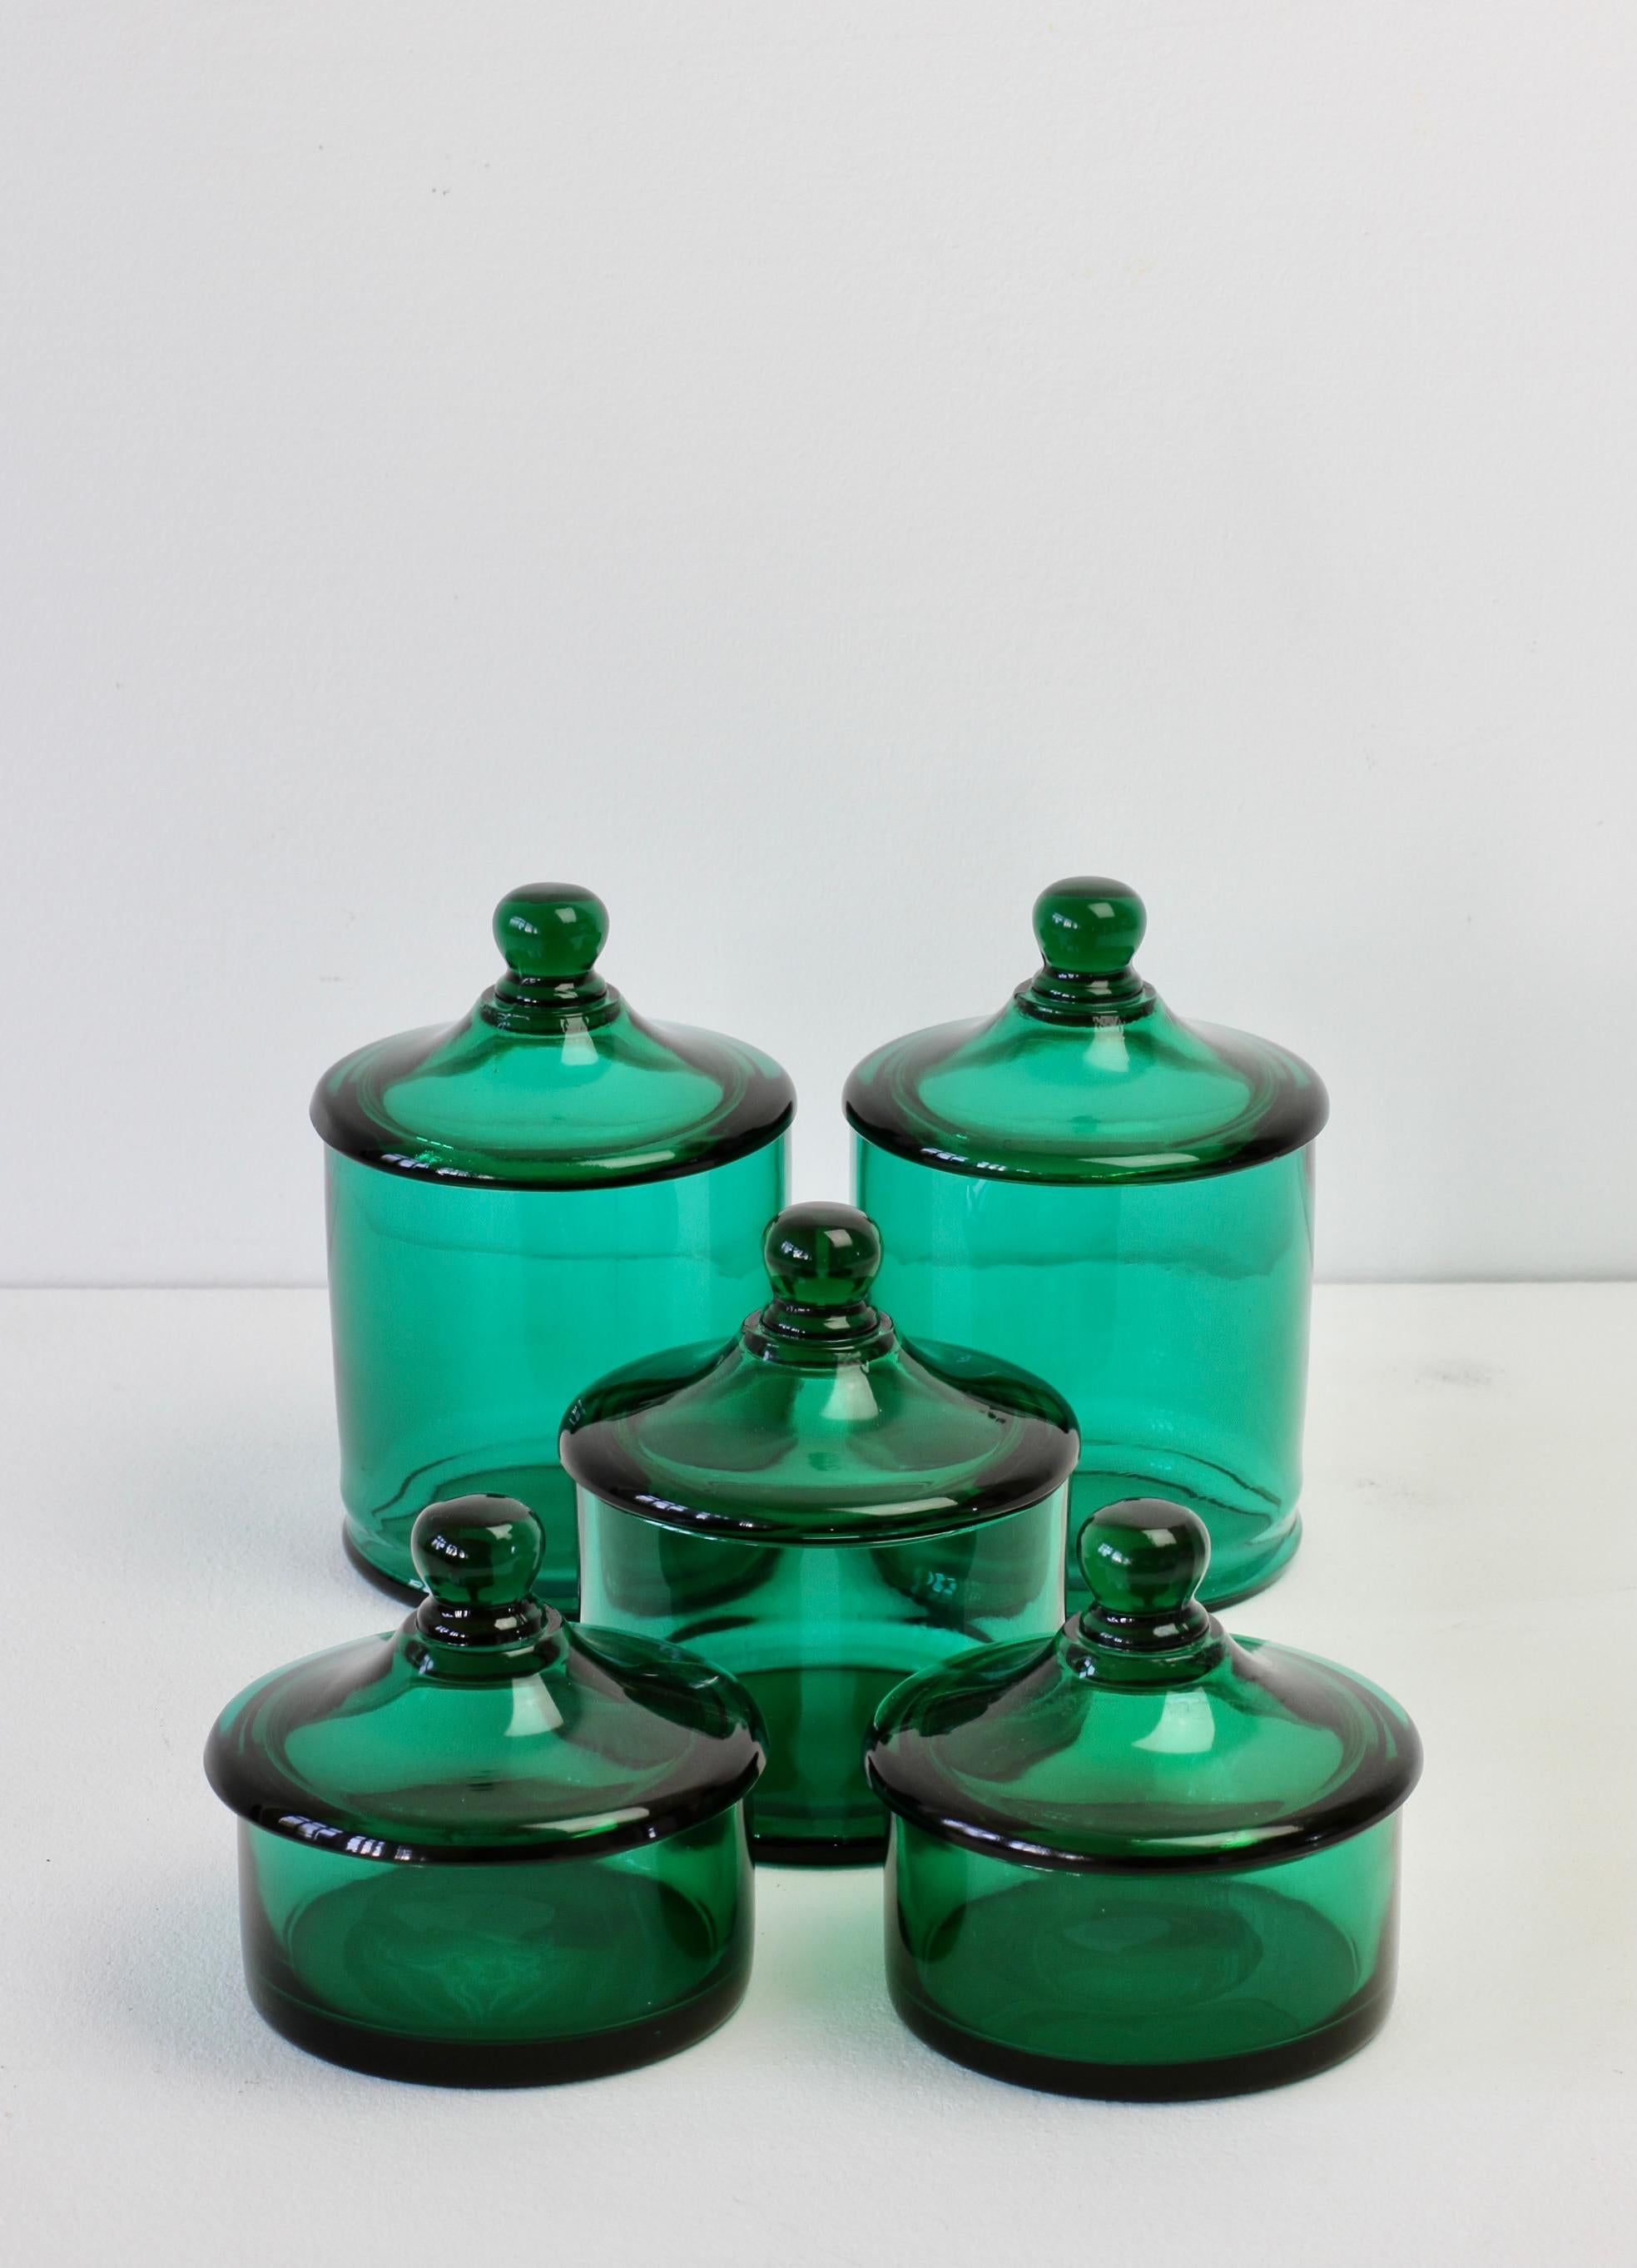 Seltener Satz von fünf venezianischen Murano grün gefärbt / farbiges Glas Apotheker Gläser oder Urnen mit Deckeln. Wunderschönes italienisches Mid-Century-Glas und perfekt für die Aufbewahrung von Süßigkeiten oder Snacks in der Küche oder für